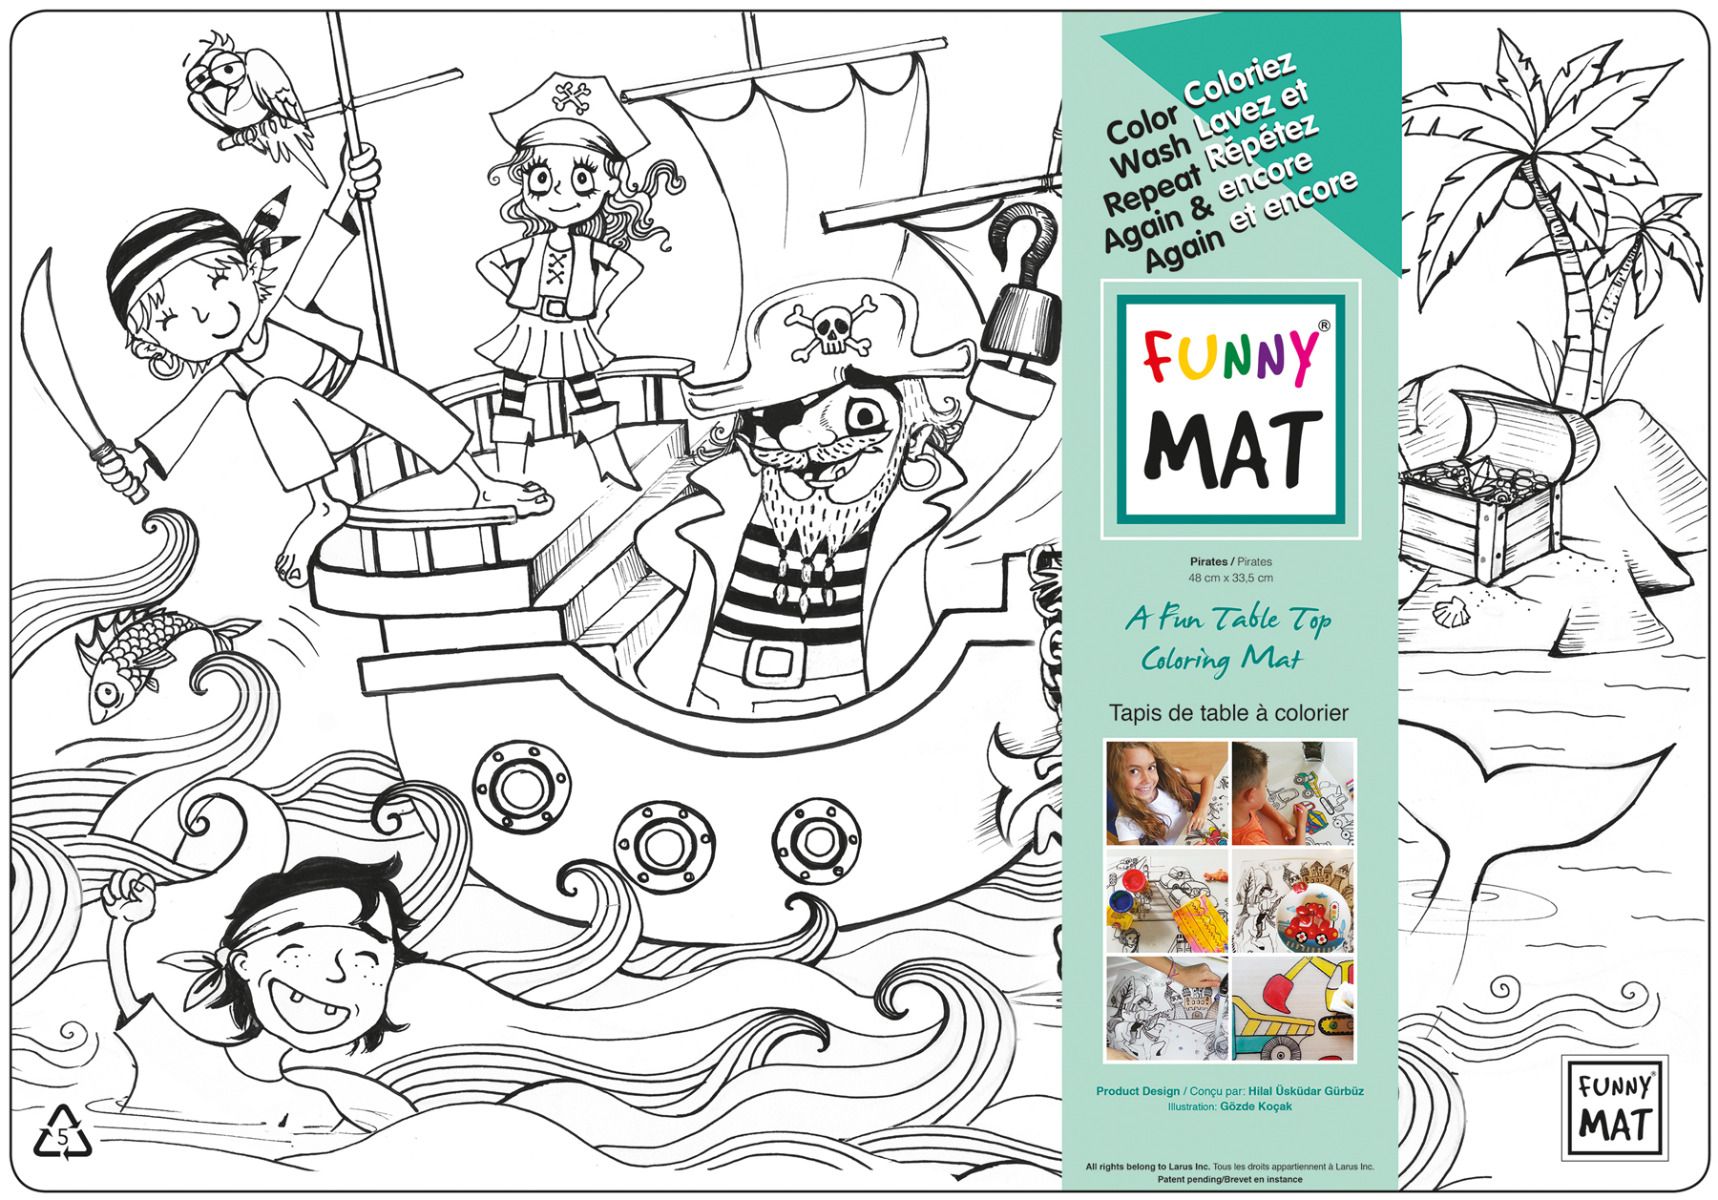 Funny MAT A Fun Table Top Coloring Mats - Pirates(Transparent, Single)